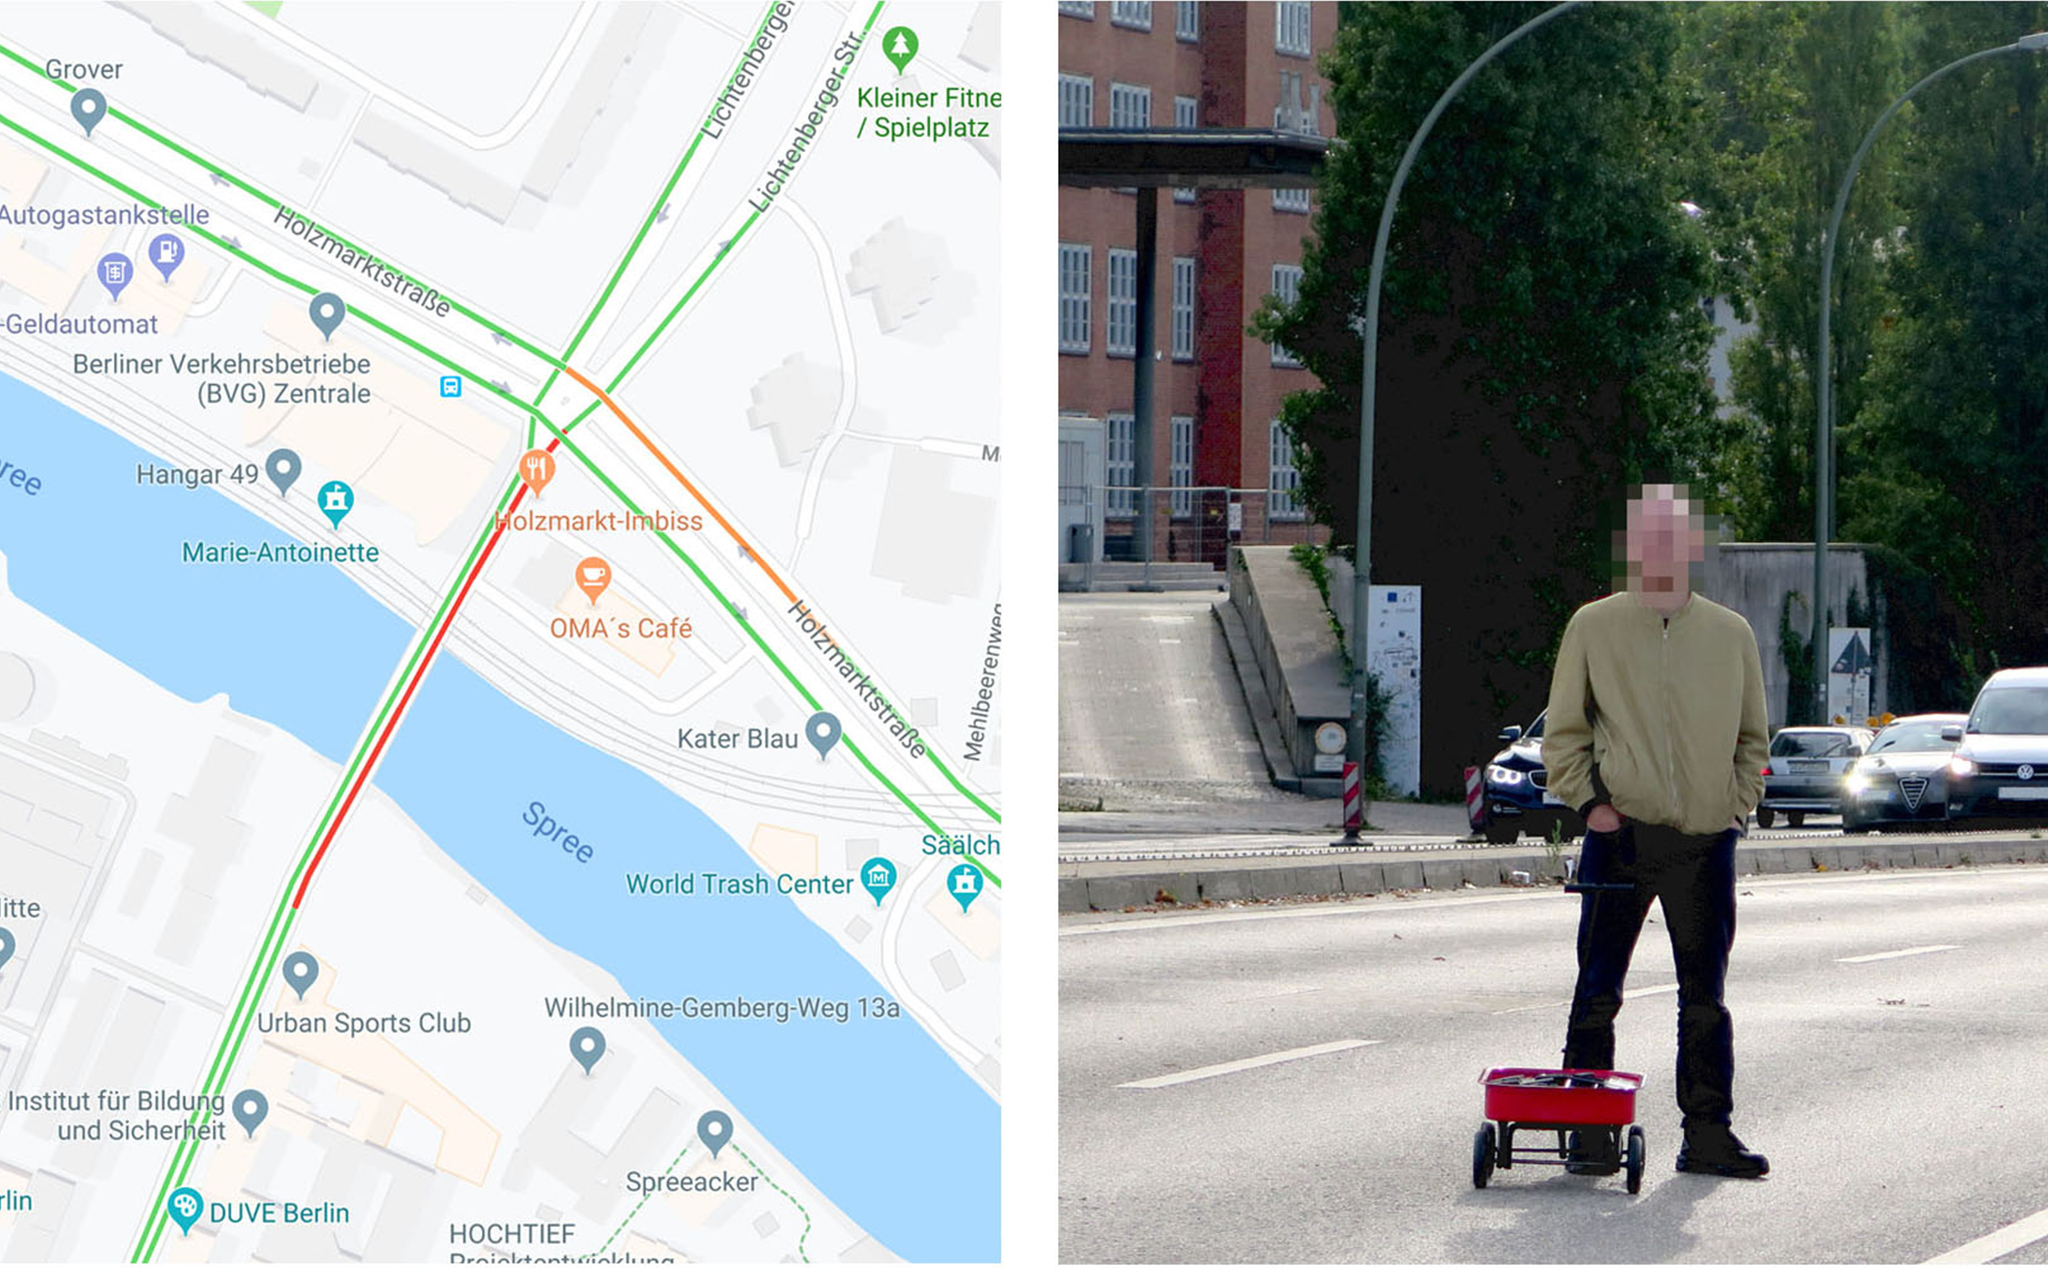 Kéo 99 cái điện thoại ra đường để "hack" Google Maps tạo ra ùn tắc giao thông giả